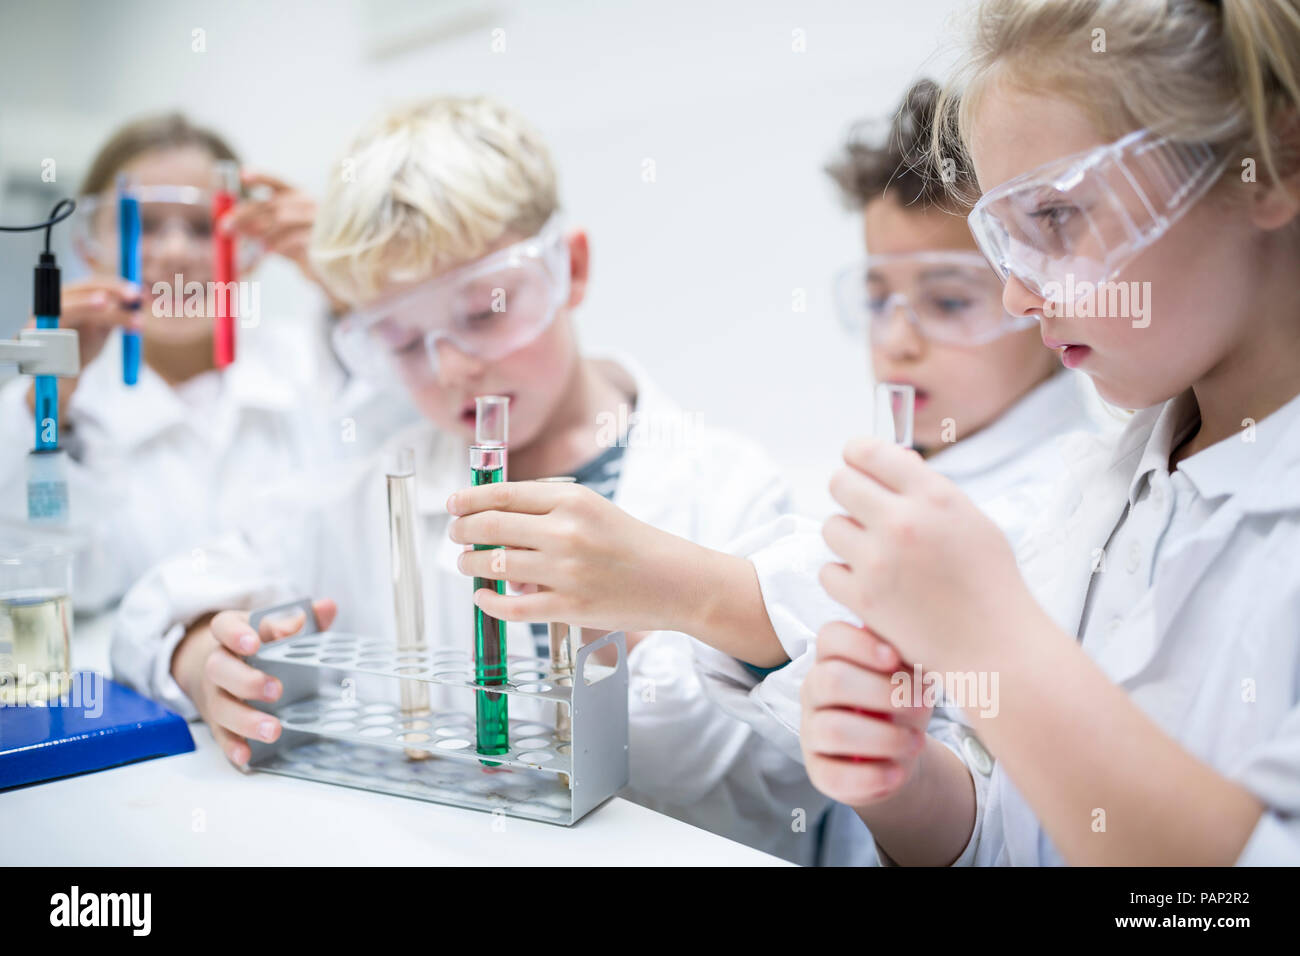 Les élèves en classe de sciences, l'expérimentation avec des liquides dans des tubes à essai Banque D'Images